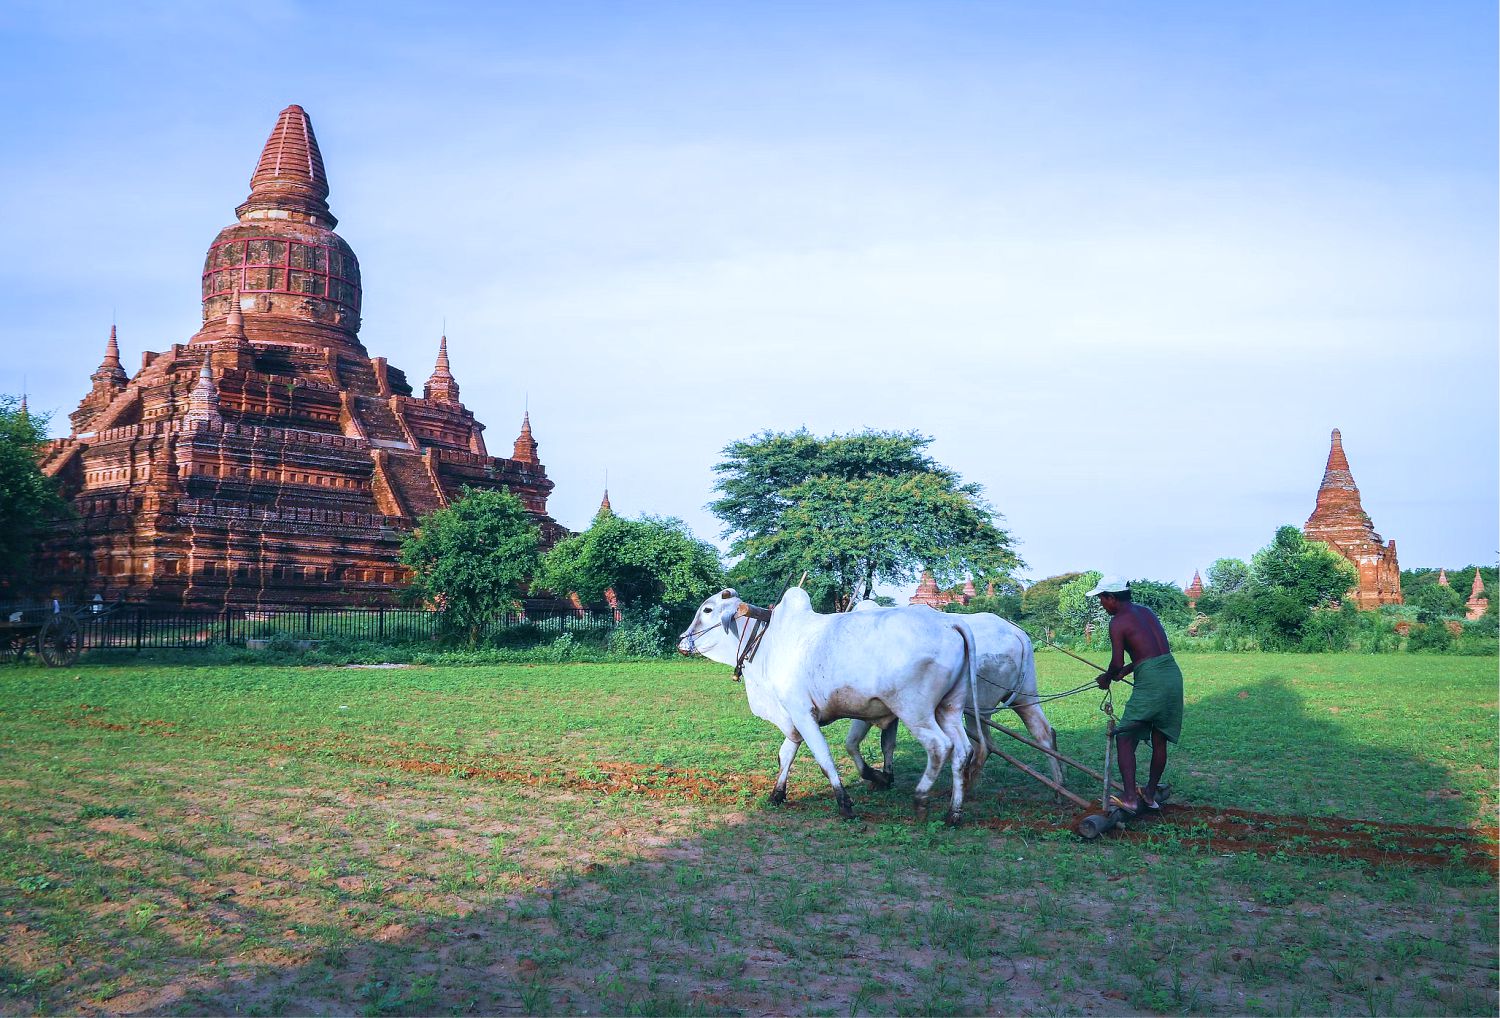 Du lịch Bagan - ngắm mặt trời lặn kì ảo sau hàng nghìn tòa tháp cổ - Ảnh 10.